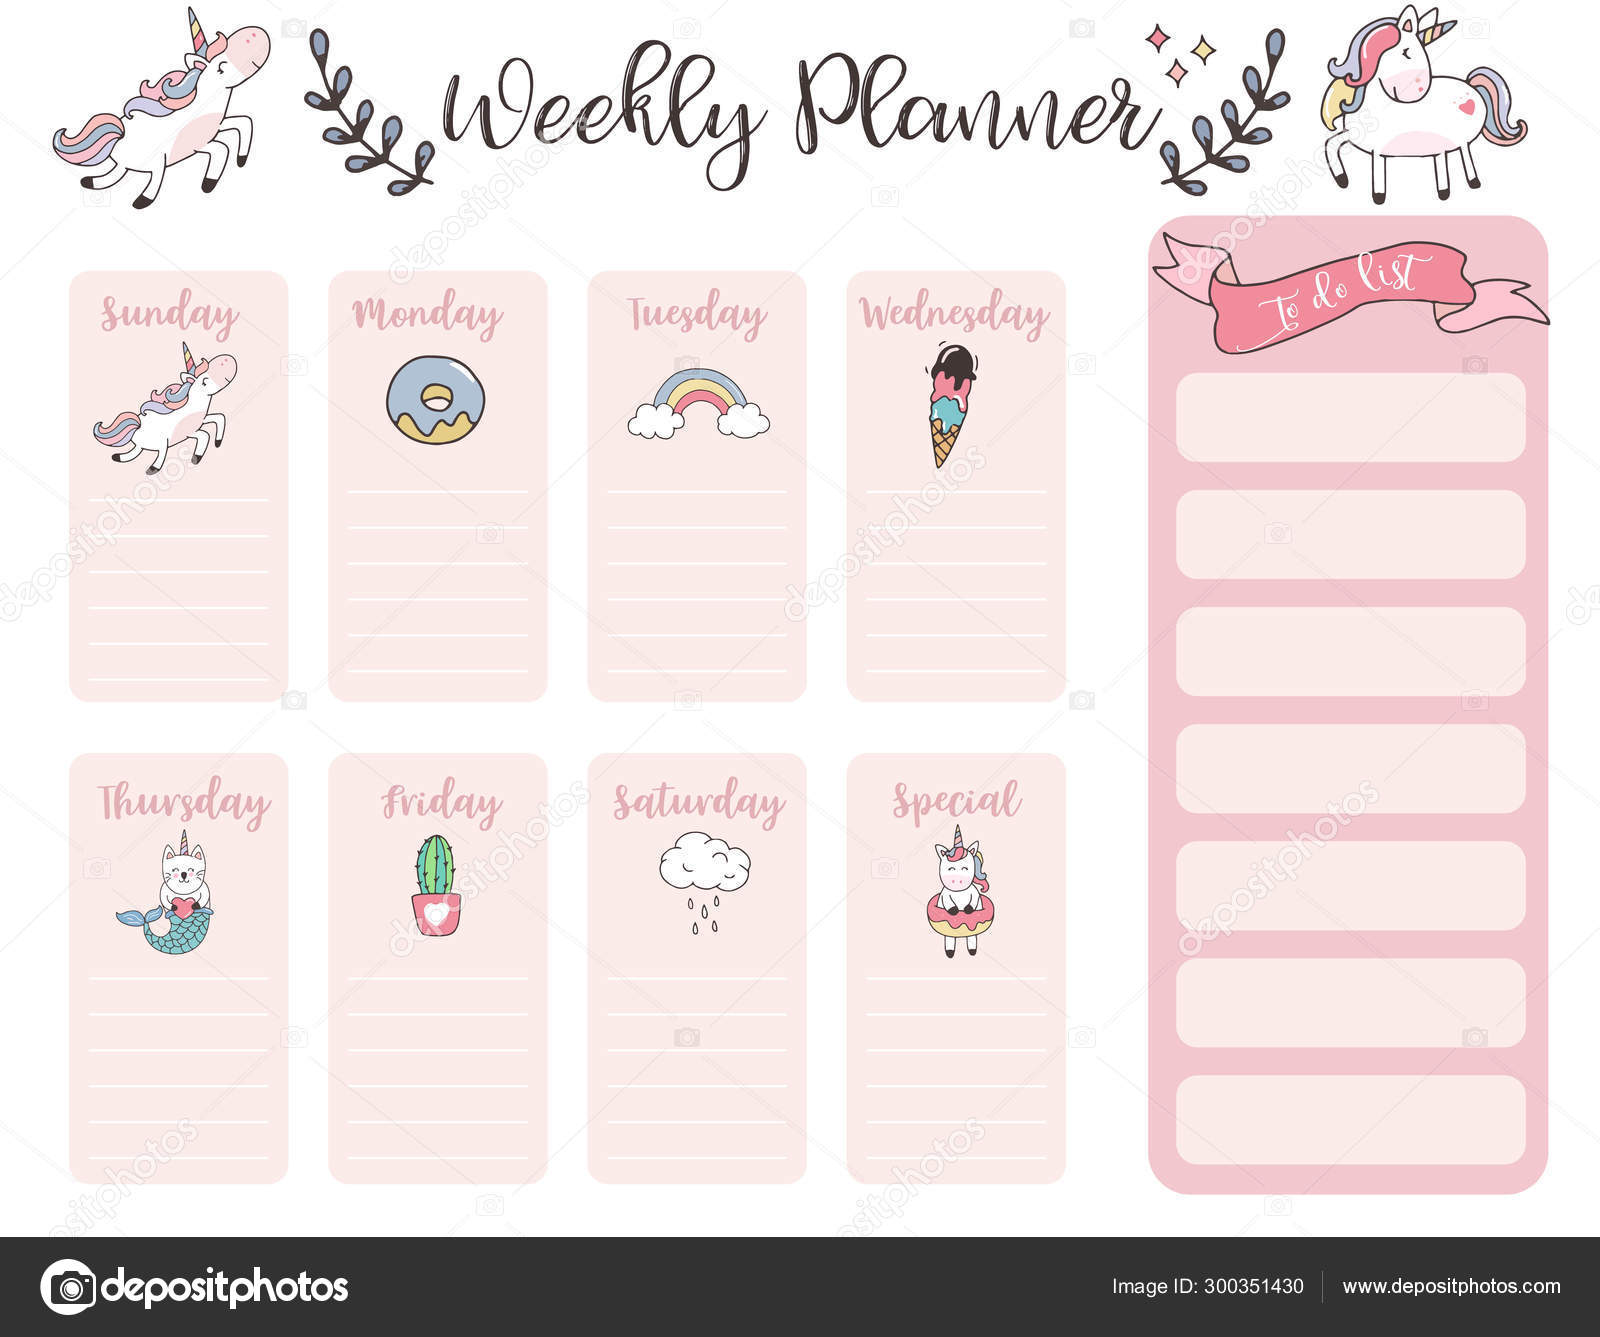 Cute Weekly Planner